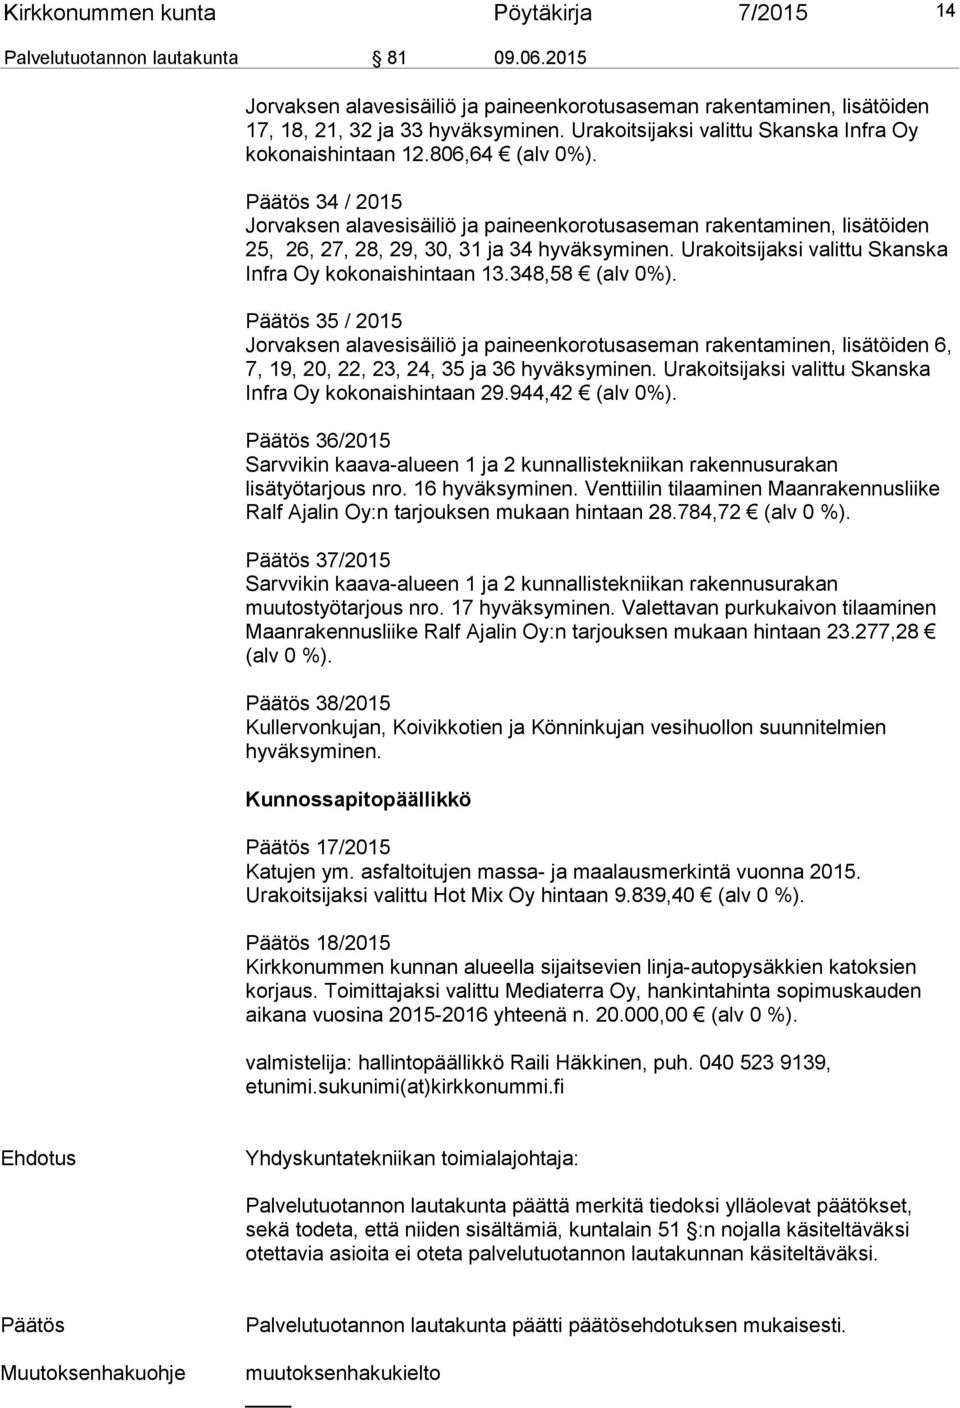 Päätös 34 / 2015 Jorvaksen alavesisäiliö ja paineenkorotusaseman rakentaminen, lisätöiden 25, 26, 27, 28, 29, 30, 31 ja 34 hyväksyminen. Urakoitsijaksi valittu Skanska Infra Oy kokonaishintaan 13.